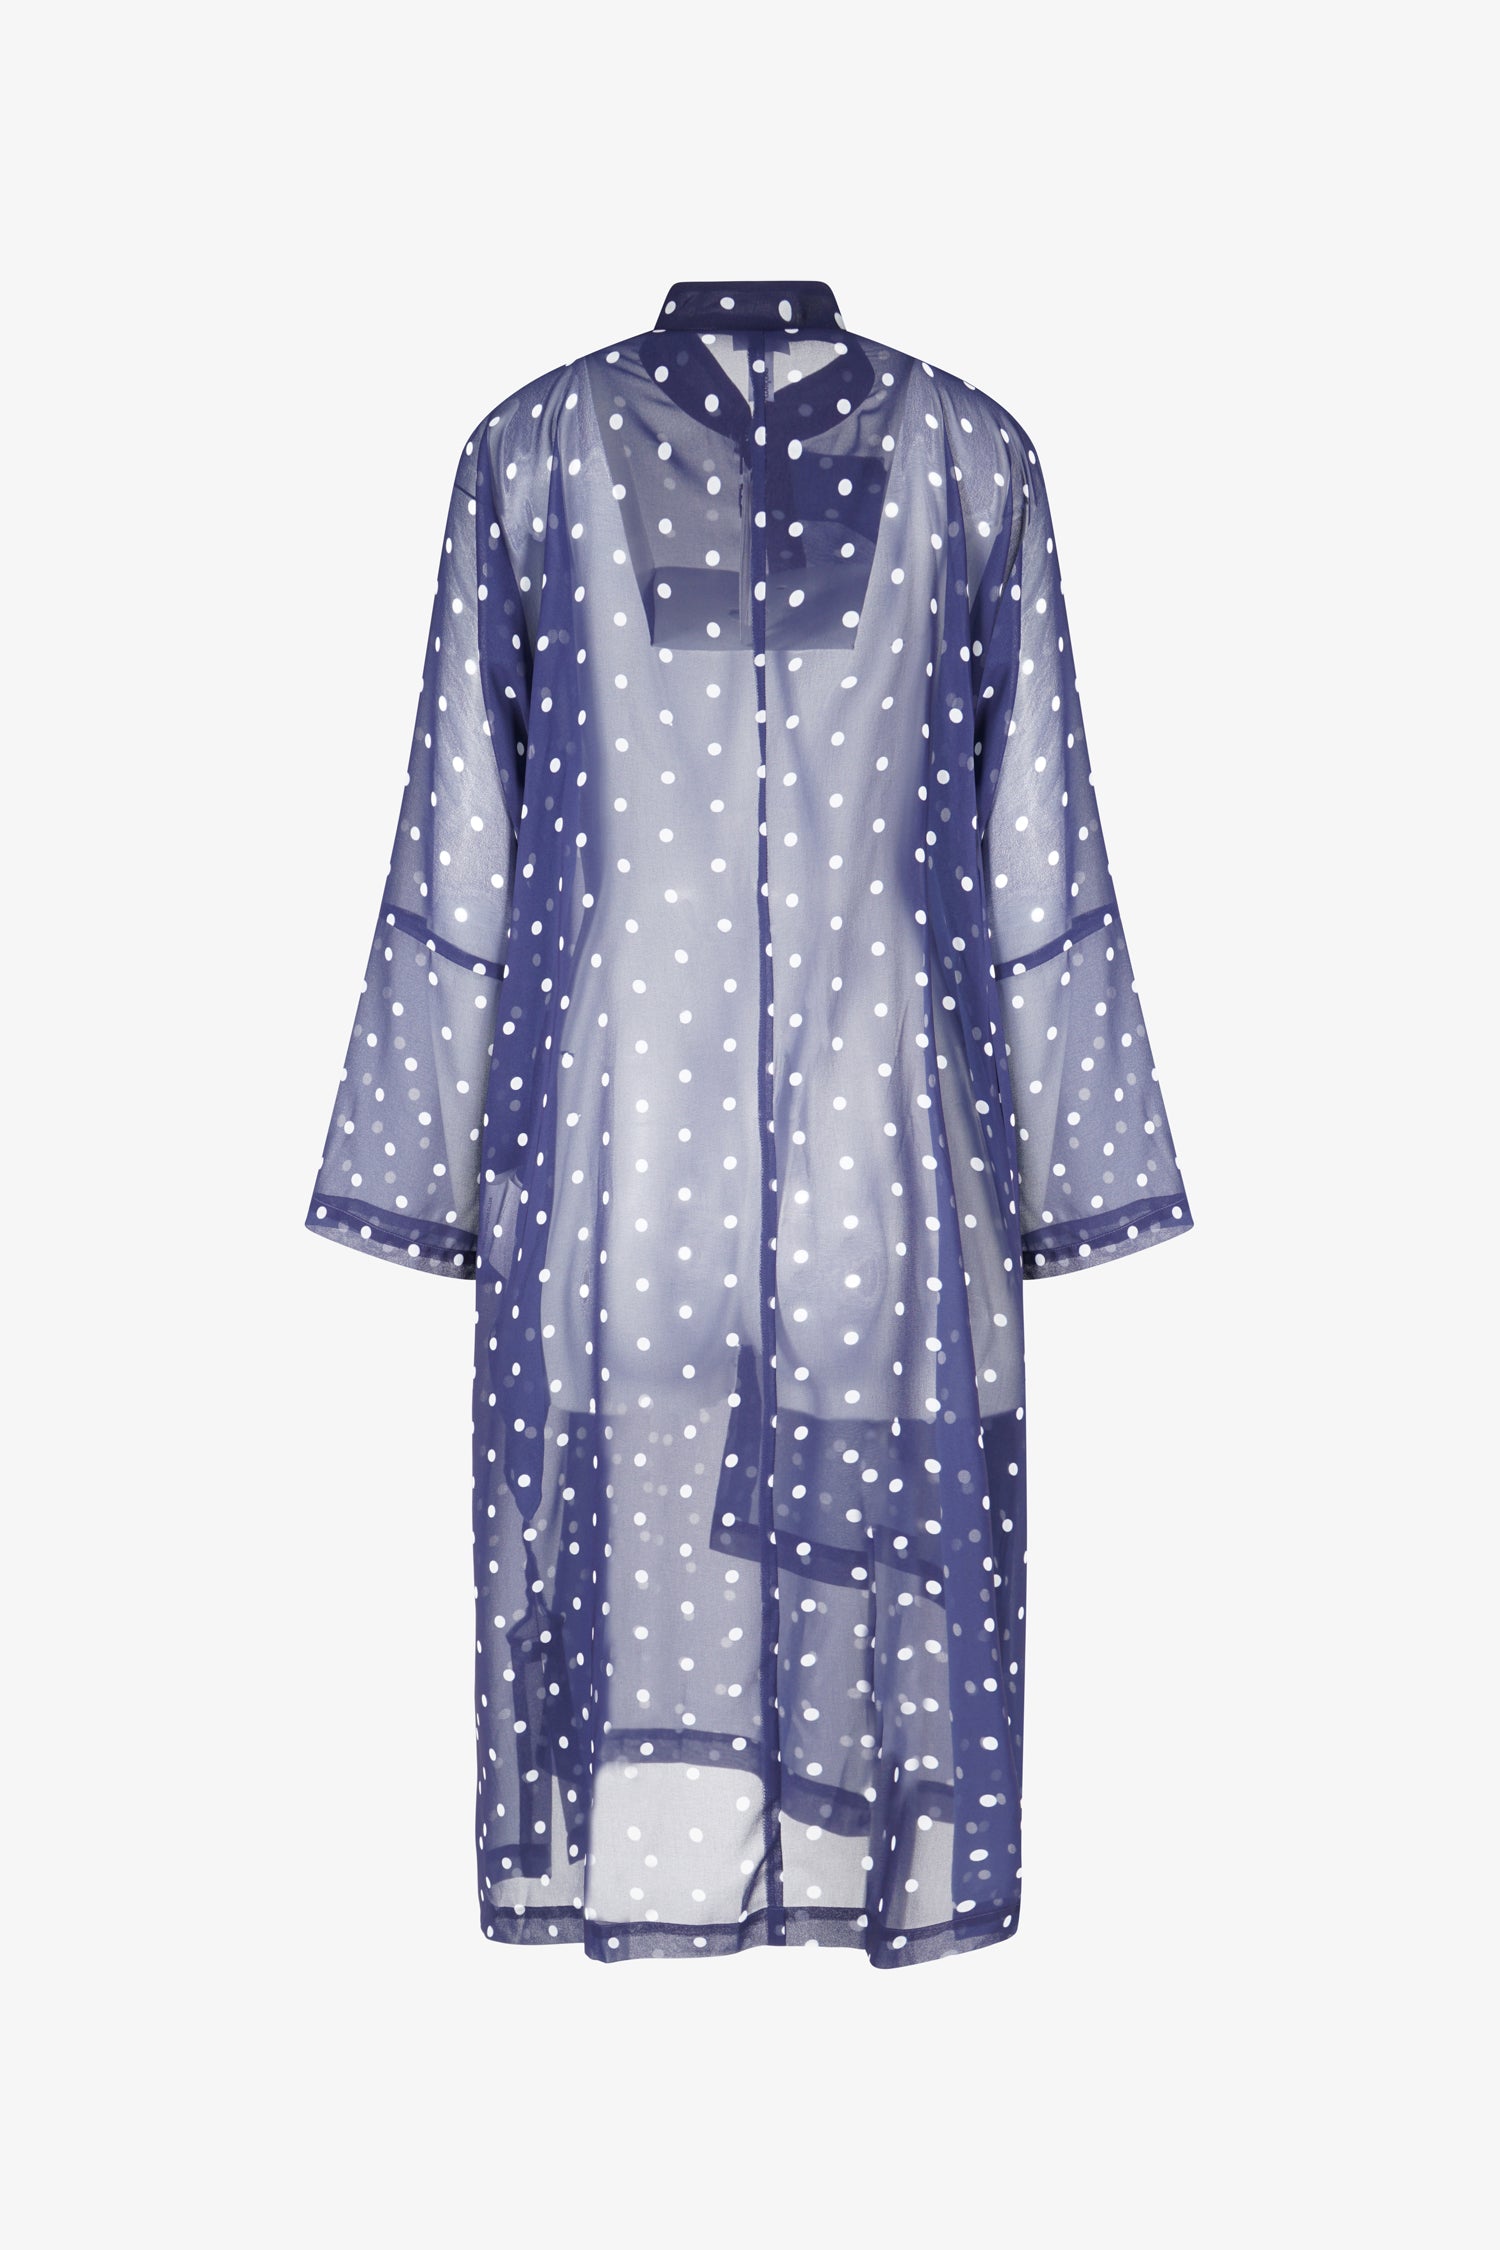 Selectshop FRAME - COMME DES GARÇONS COMME DES GARÇONS Side Detail Sheer Dress Dress Dubai